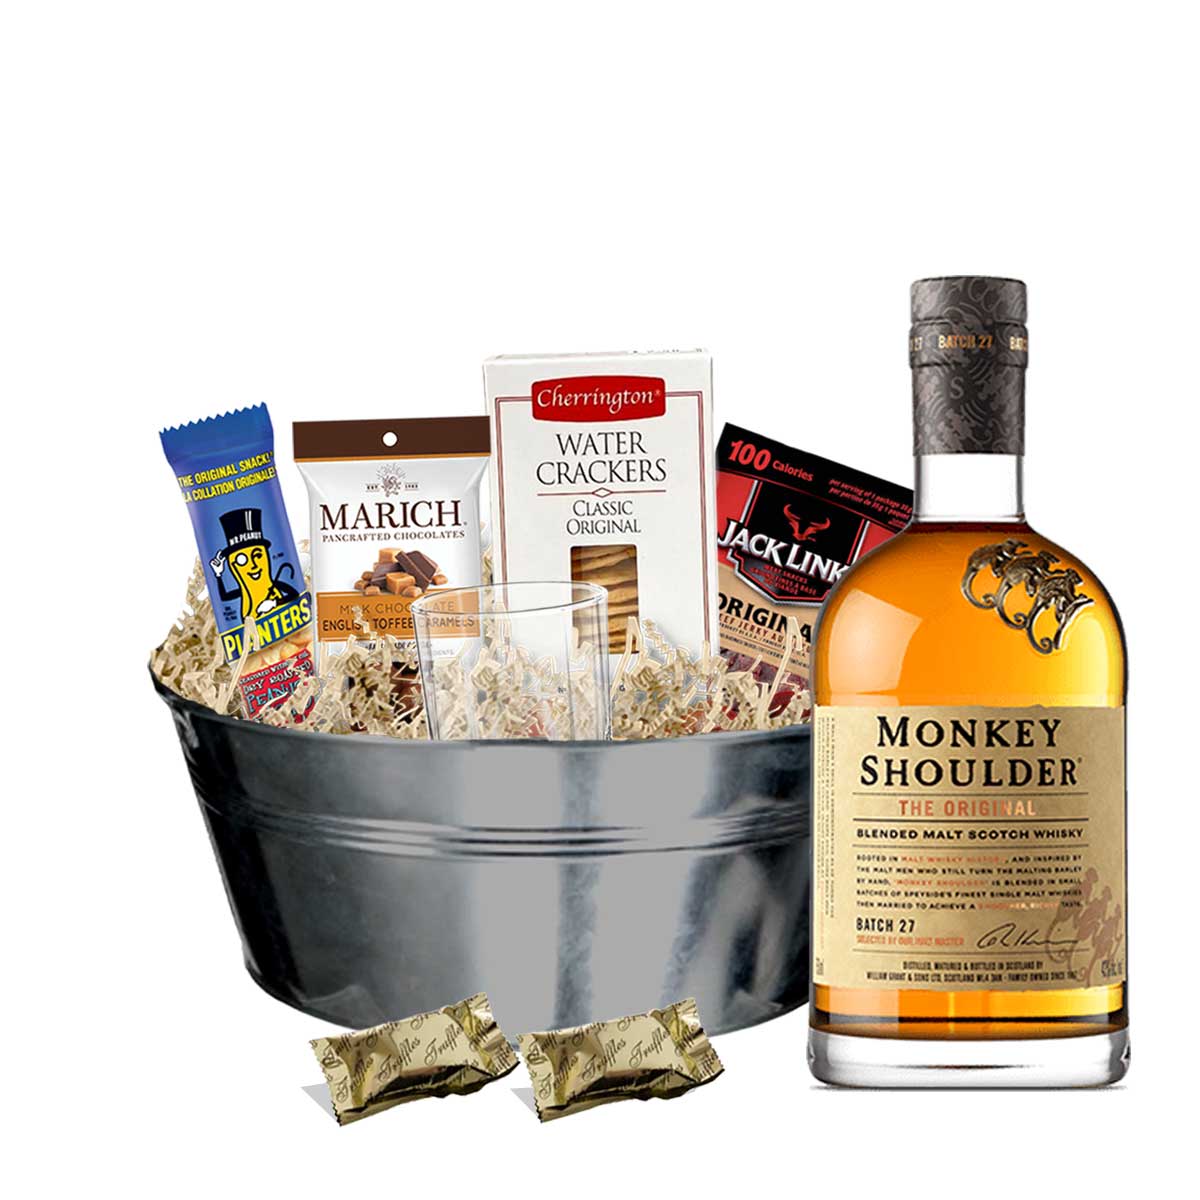 TAG Liquor Stores BC - Monkey Shoulder Blended Malt Scotch Whisky 750ml Gift Basket